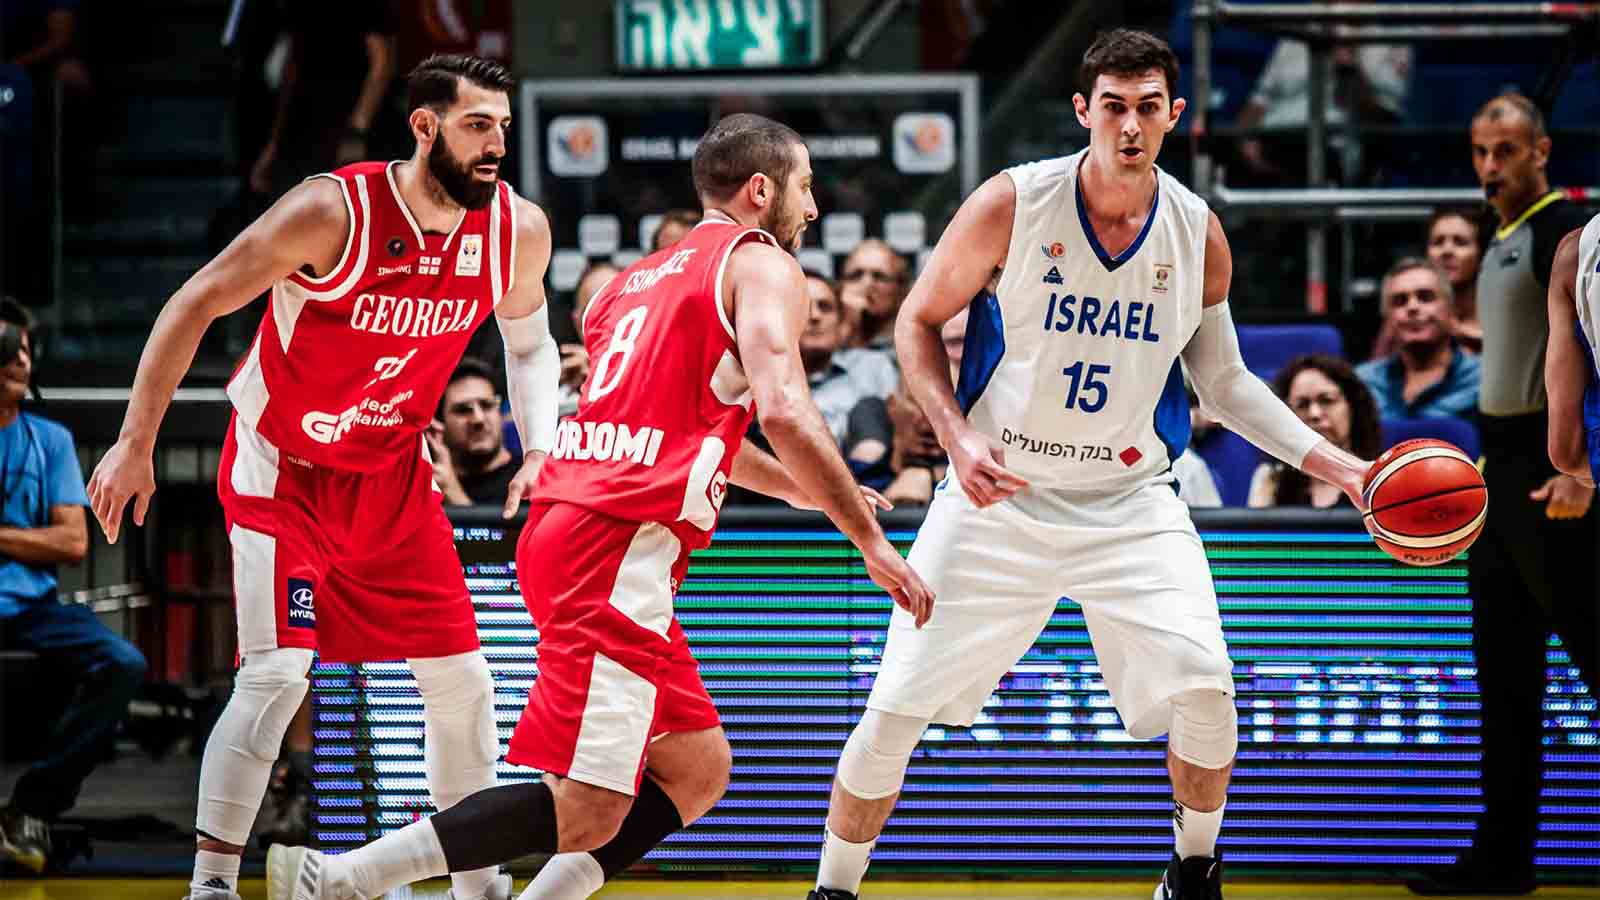 נבחרת ישראל מול נבחרת גיאורגיה (צילום באדיבות איגוד הכדורסל בישראל)